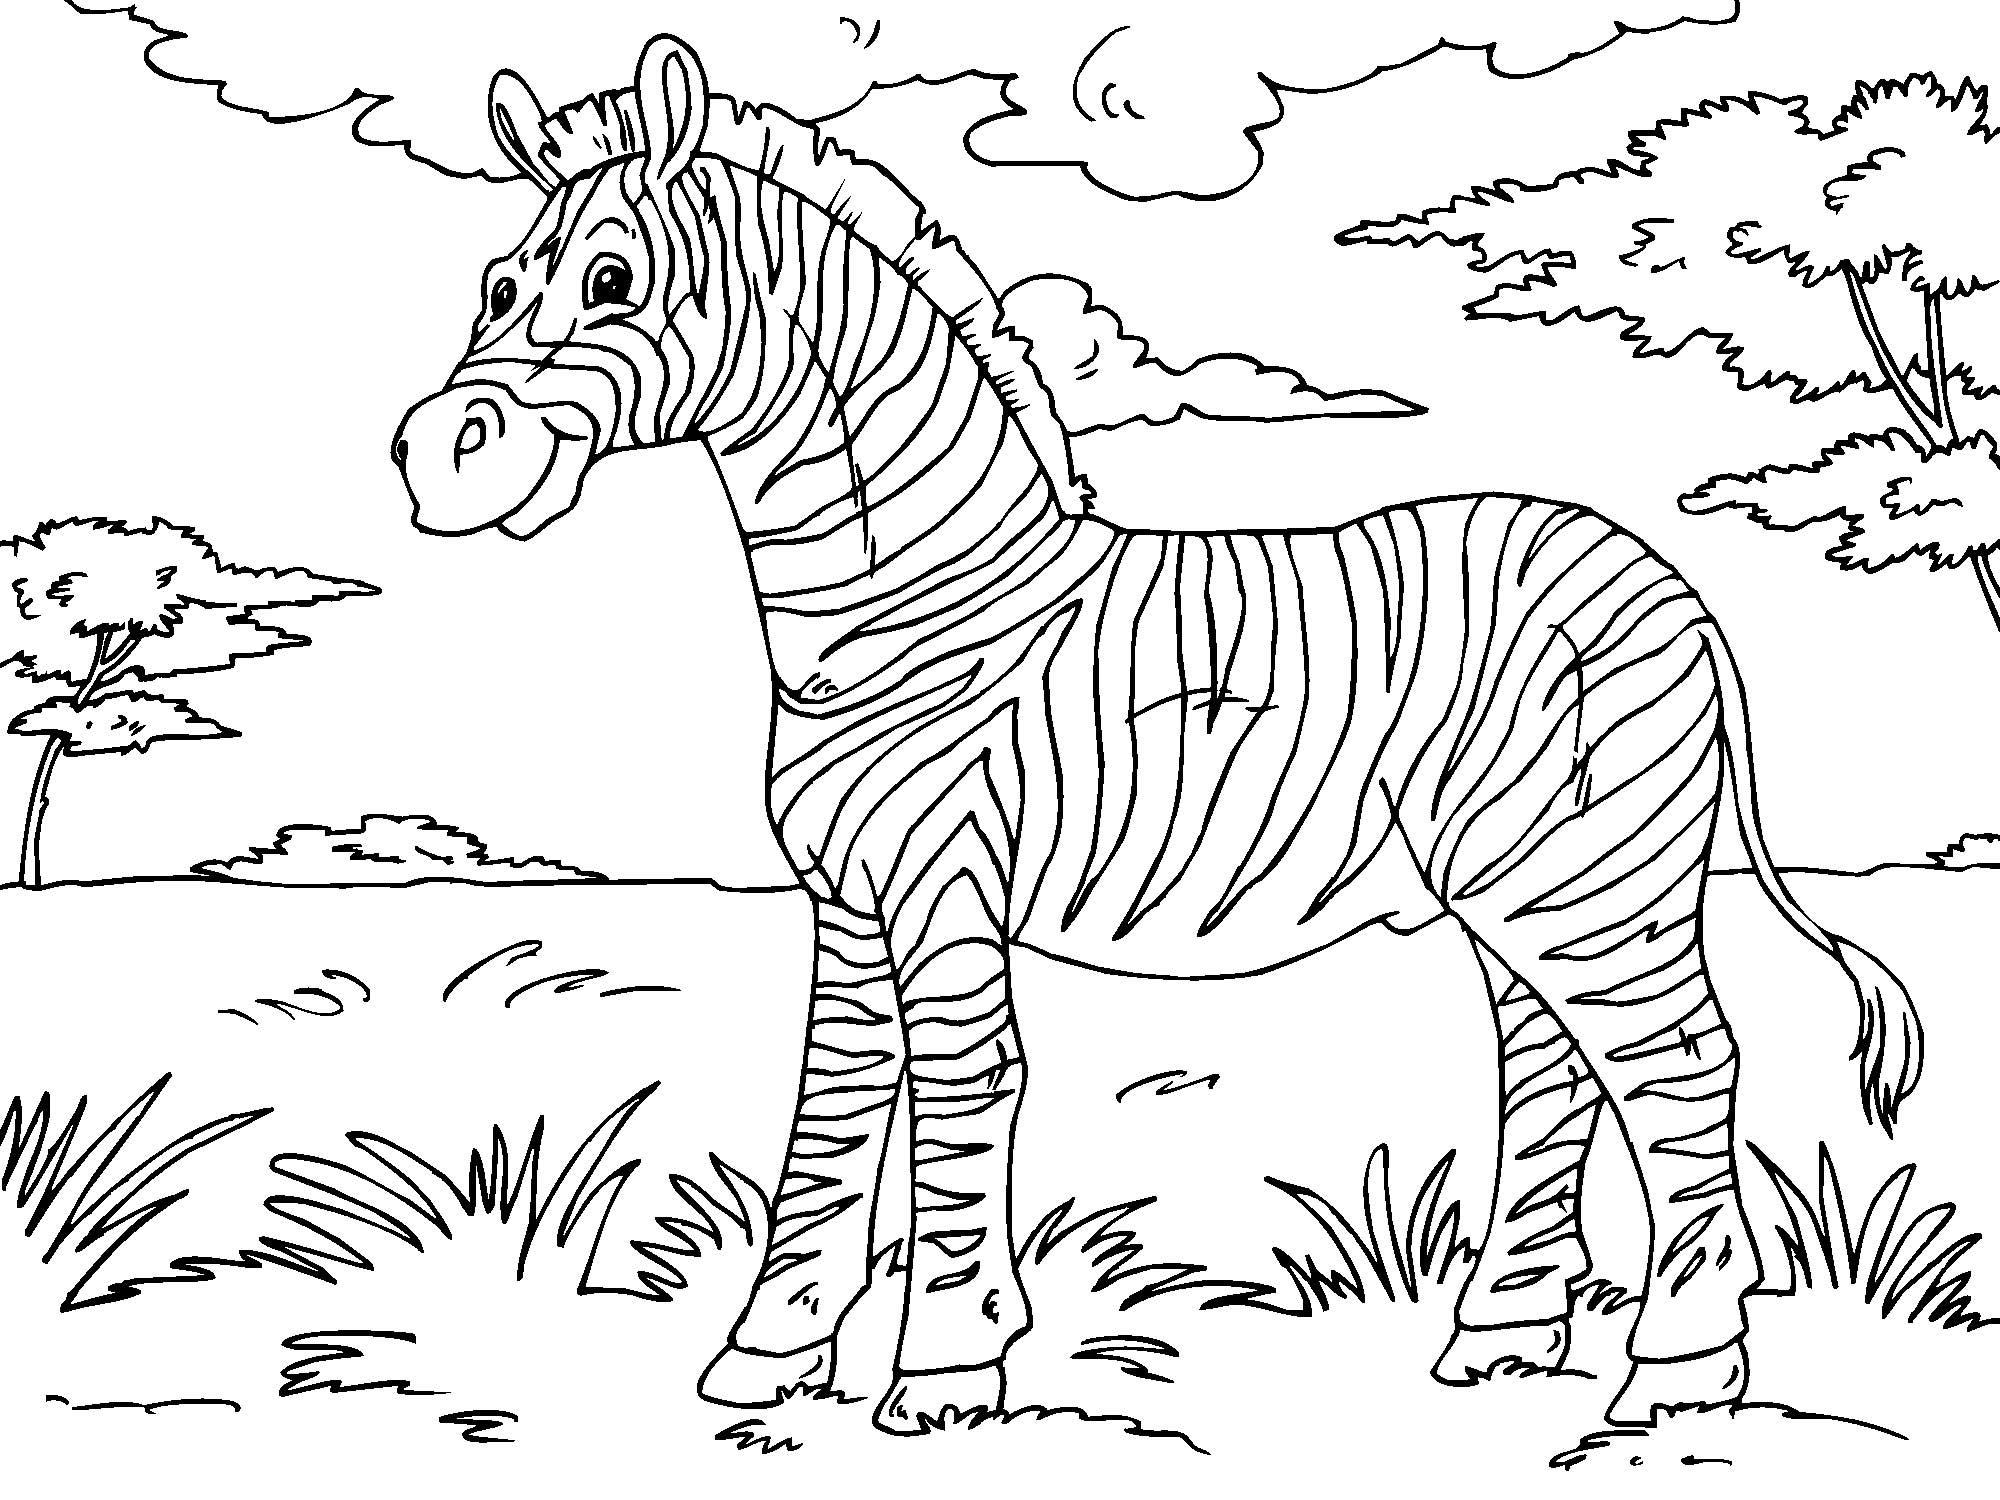 Malvorlage Zebra   Kostenlose Ausmalbilder Zum Ausdrucken   Bild ...